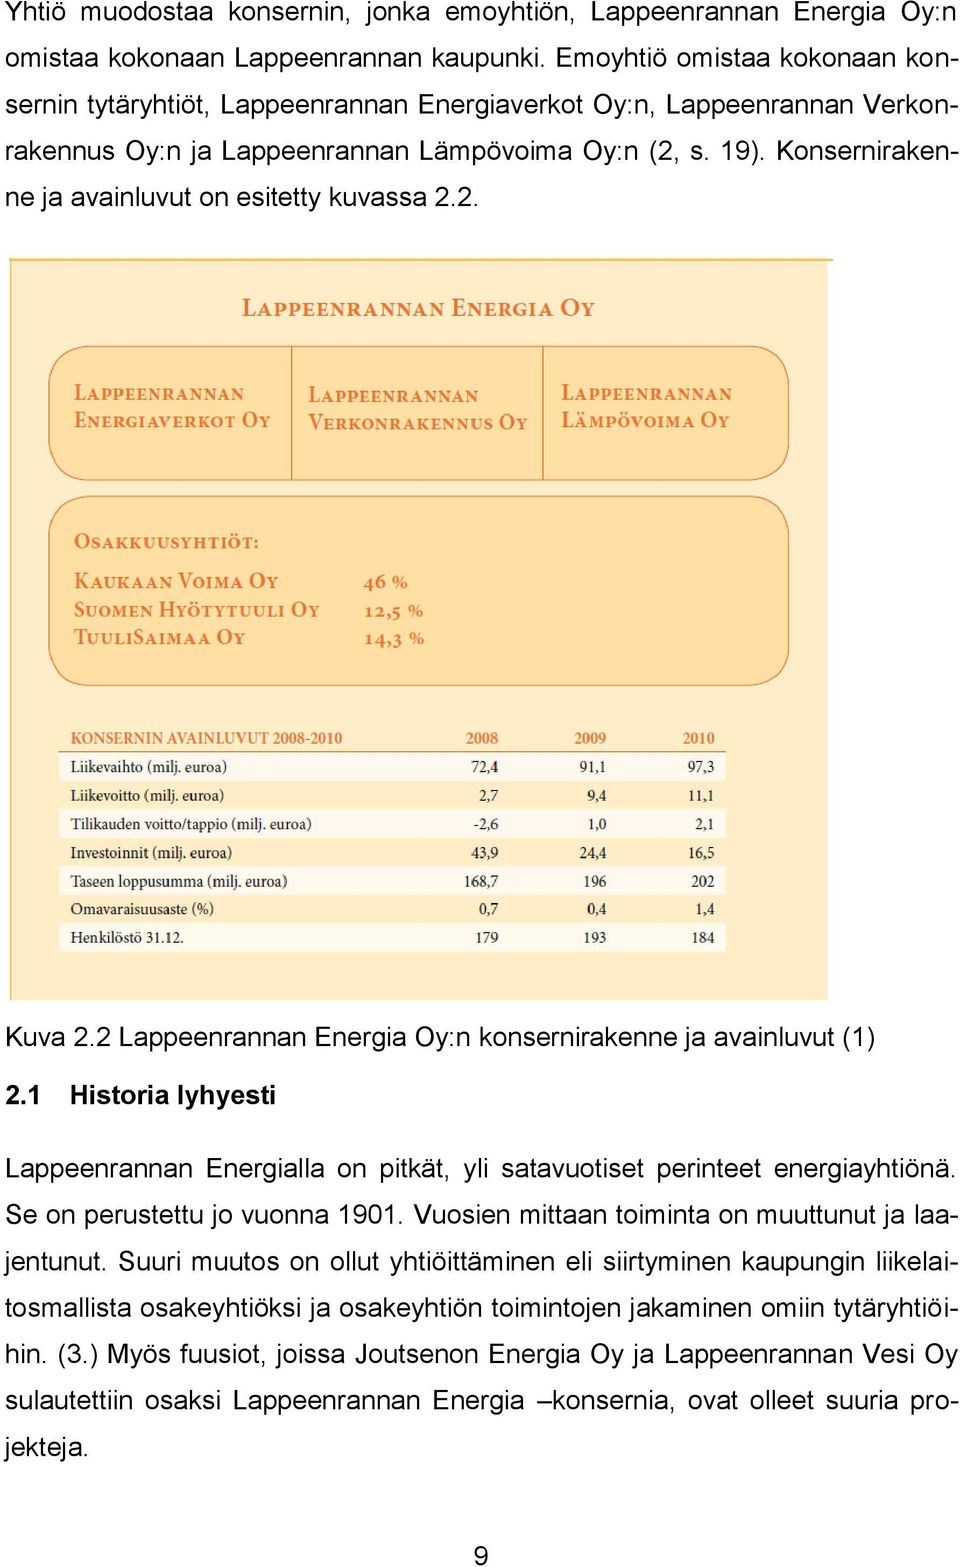 Konsernirakenne ja avainluvut on esitetty kuvassa 2.2. Kuva 2.2 Lappeenrannan Energia Oy:n konsernirakenne ja avainluvut (1) 2.